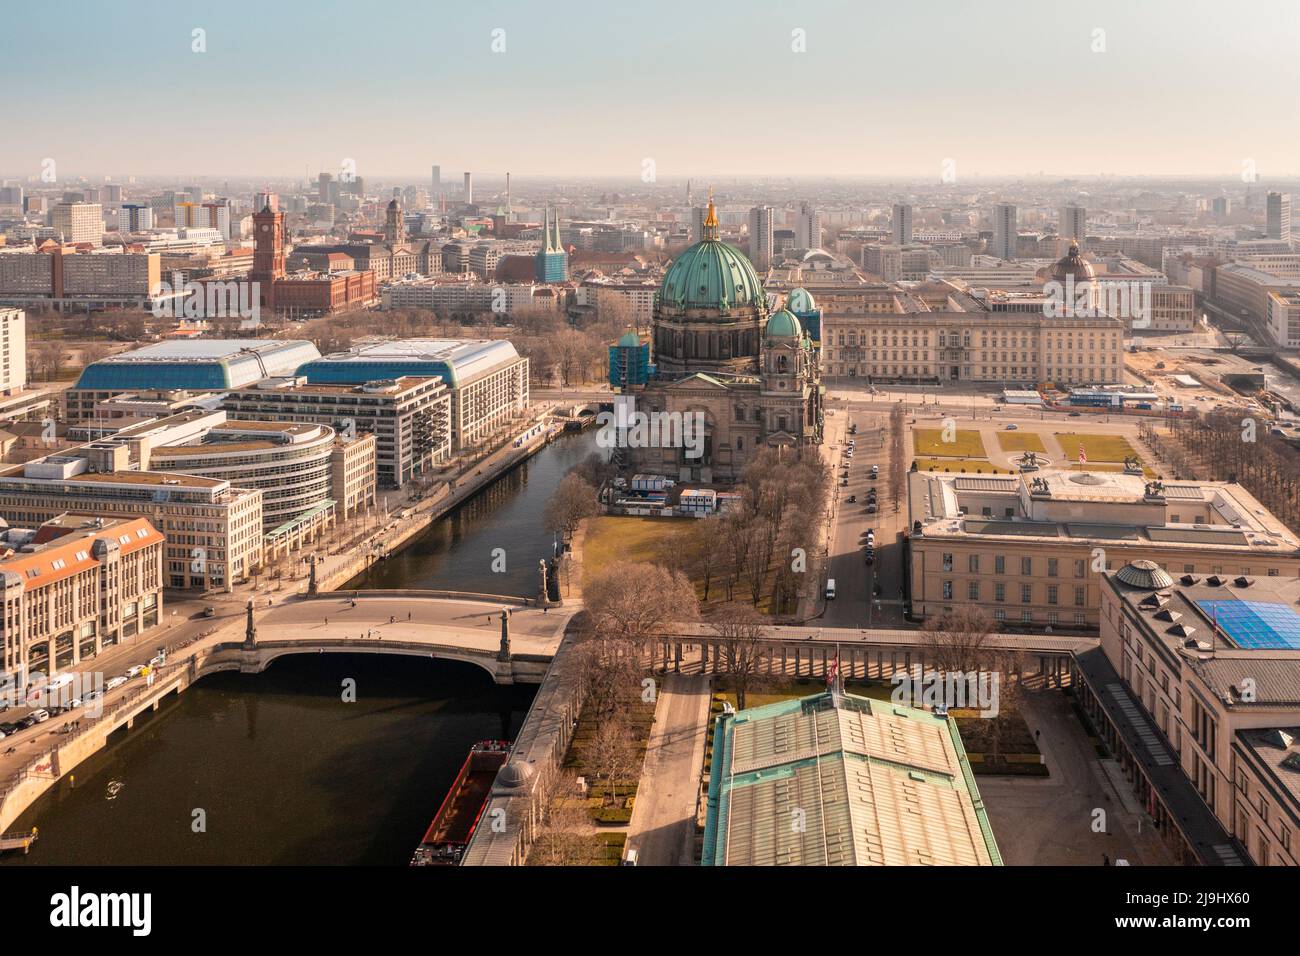 Allemagne, Berlin, vue aérienne de l'île aux musées avec la cathédrale de Berlin en arrière-plan Banque D'Images